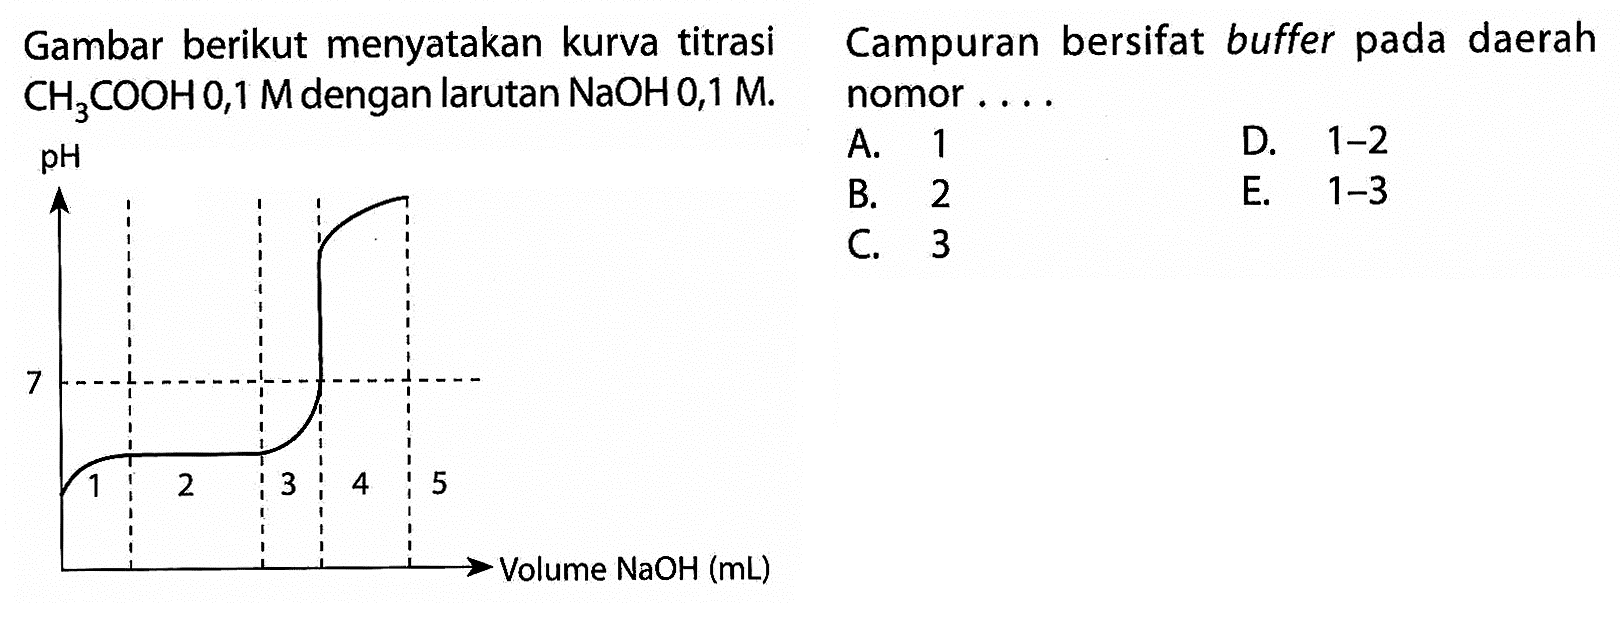 Gambar berikut menyatakan kurva titrasi CH3COOH 0,1 M dengan larutan NaOH 0,1 M.  pH 7 1 2 3 4 5 Volume NaOH (mL) Campuran bersifat buffer pada daerah nomor.... A. 1 D. 1-2 B. 2 E. 1-3 C. 3